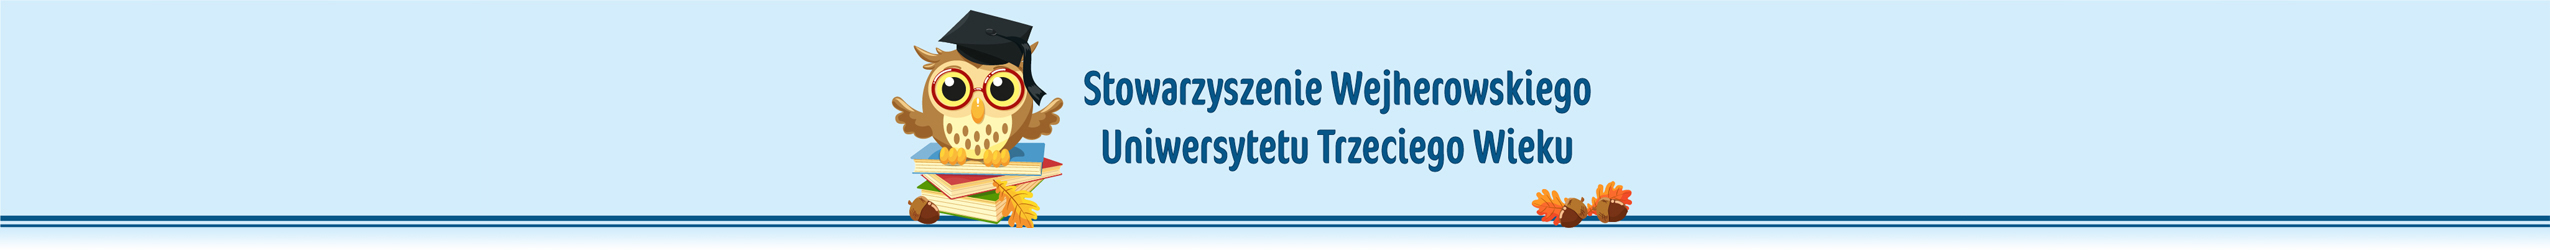 SWUTW - Stowarzyszenie Wejherowskiego Uniwersytetu Trzeciego Wieku